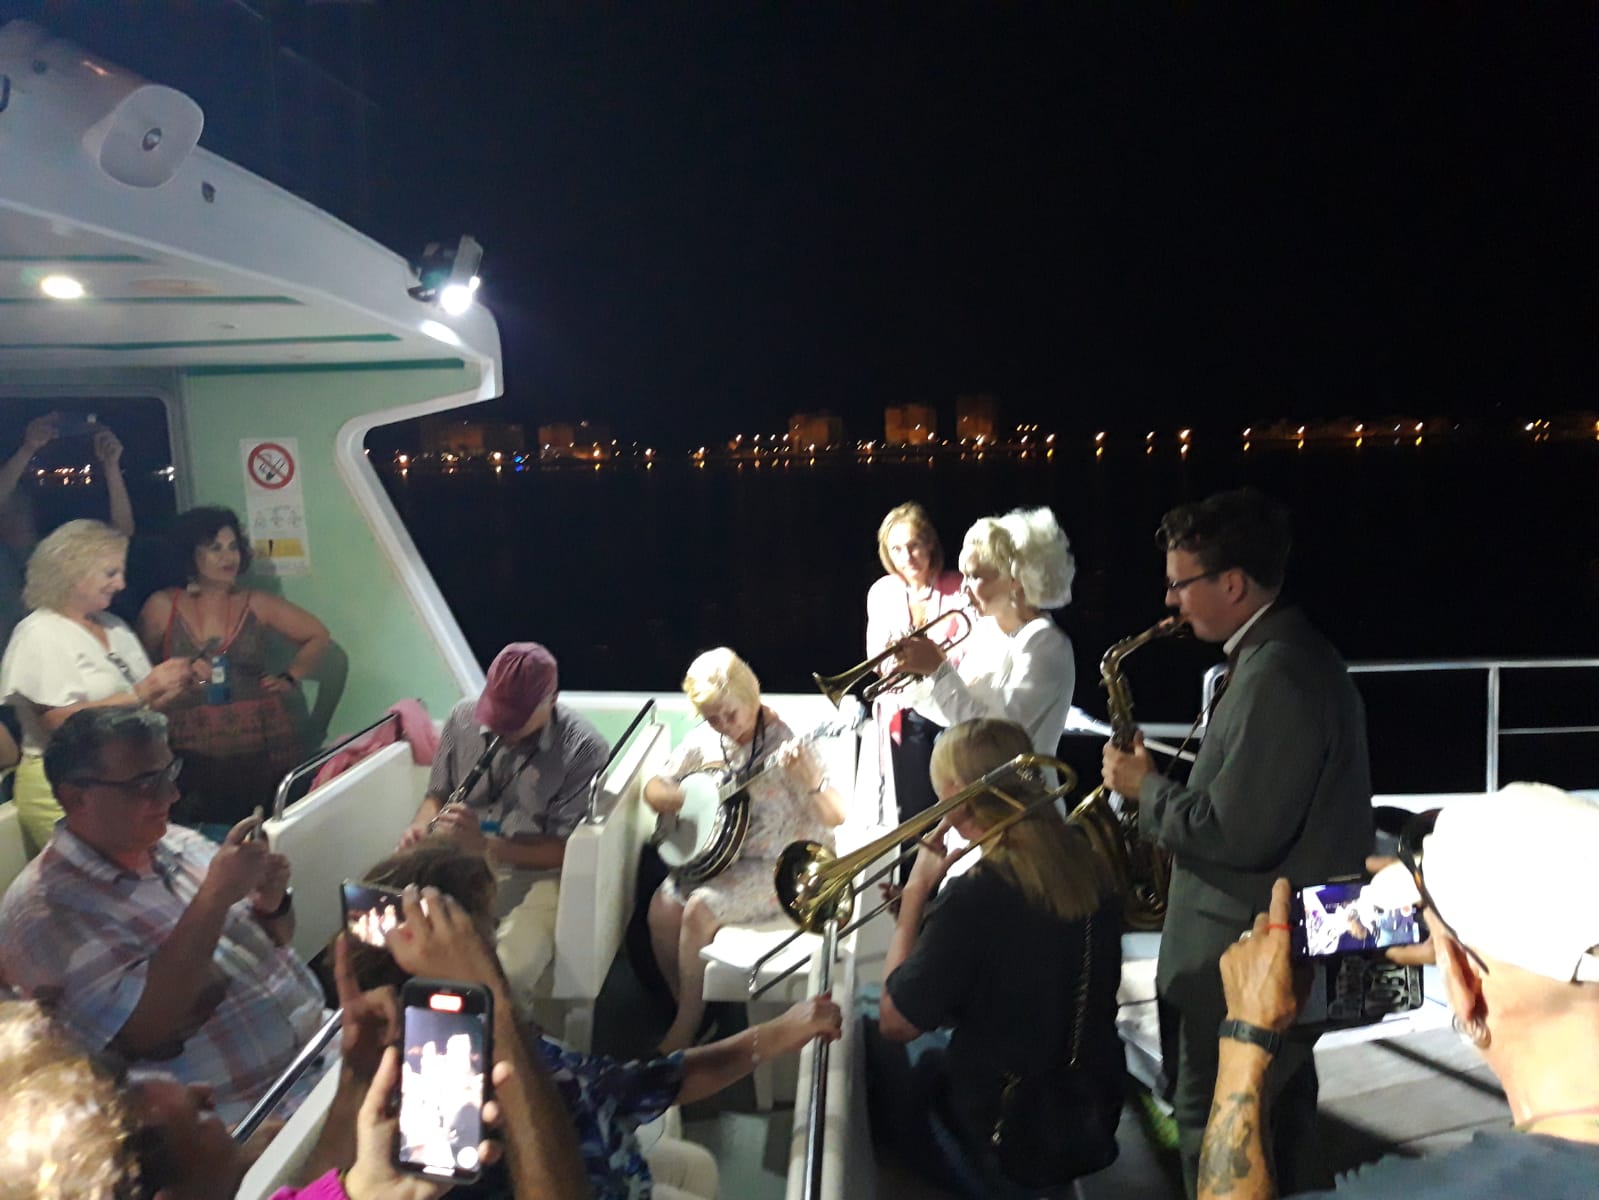 La familia Carling en concierto en el ferry